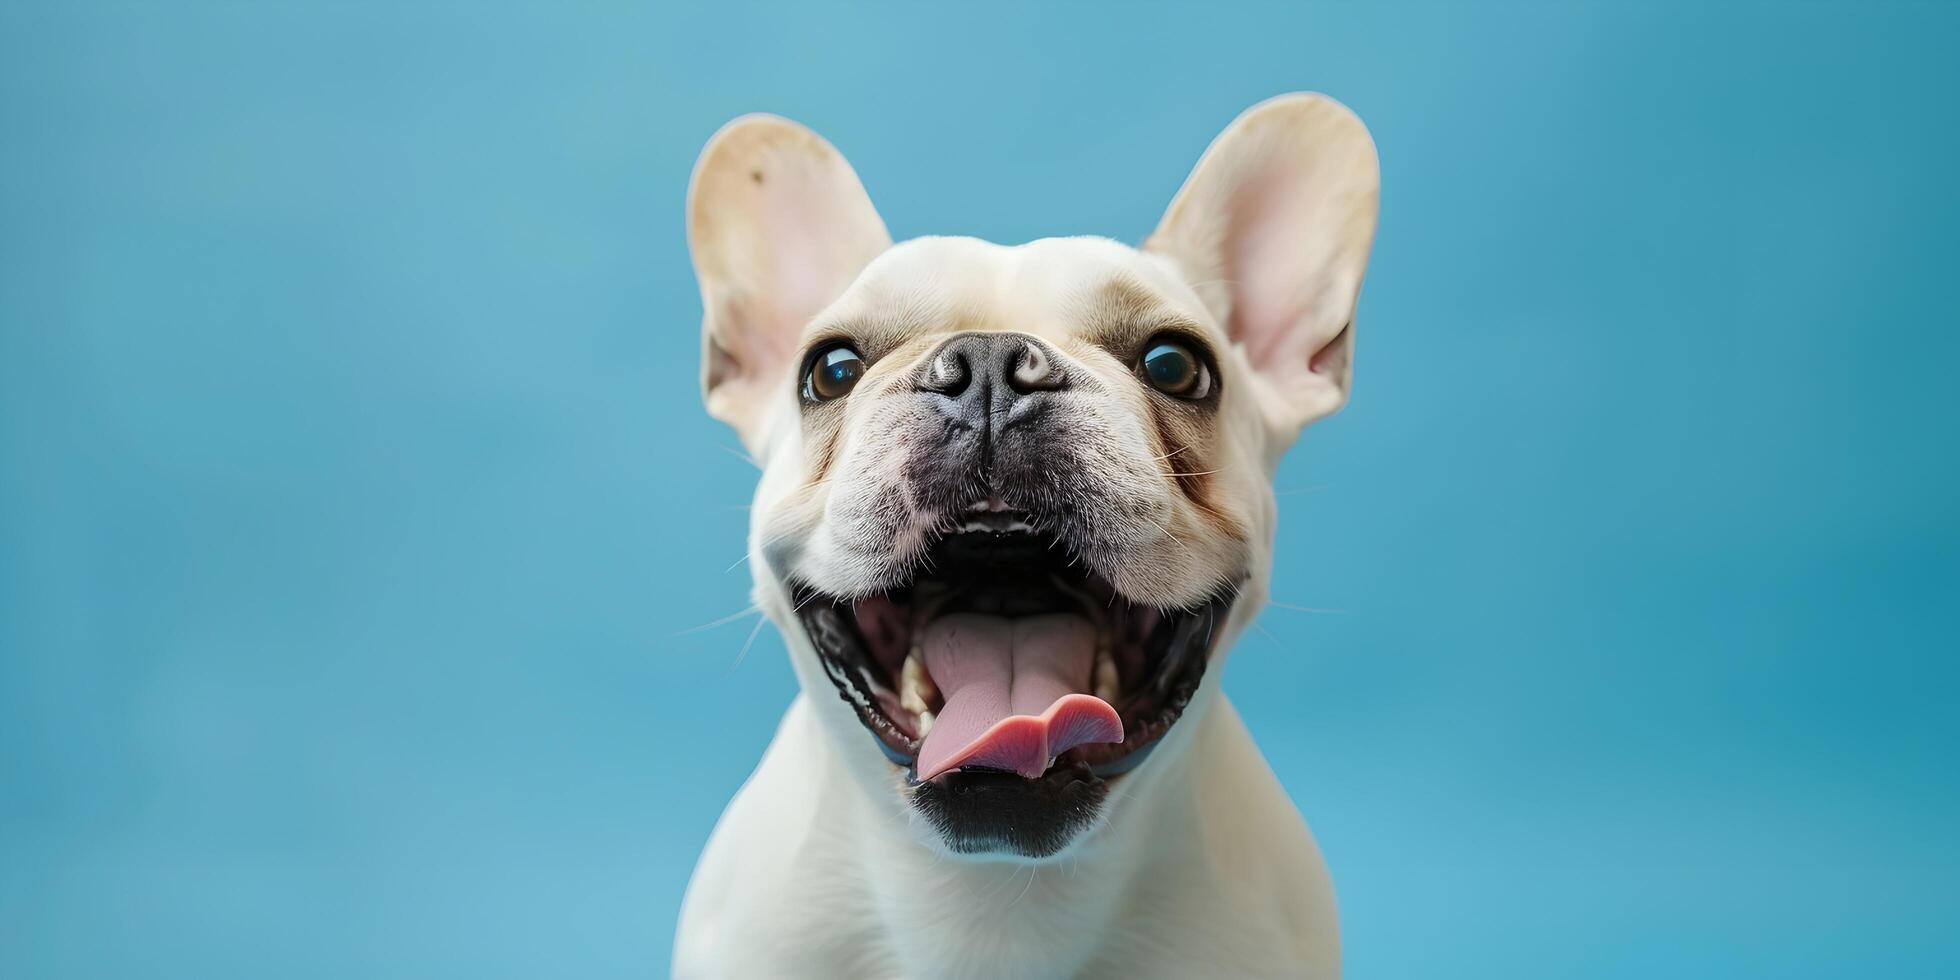 Frans bulldog hond dat heeft geopend haar mond en stokjes uit haar tong foto